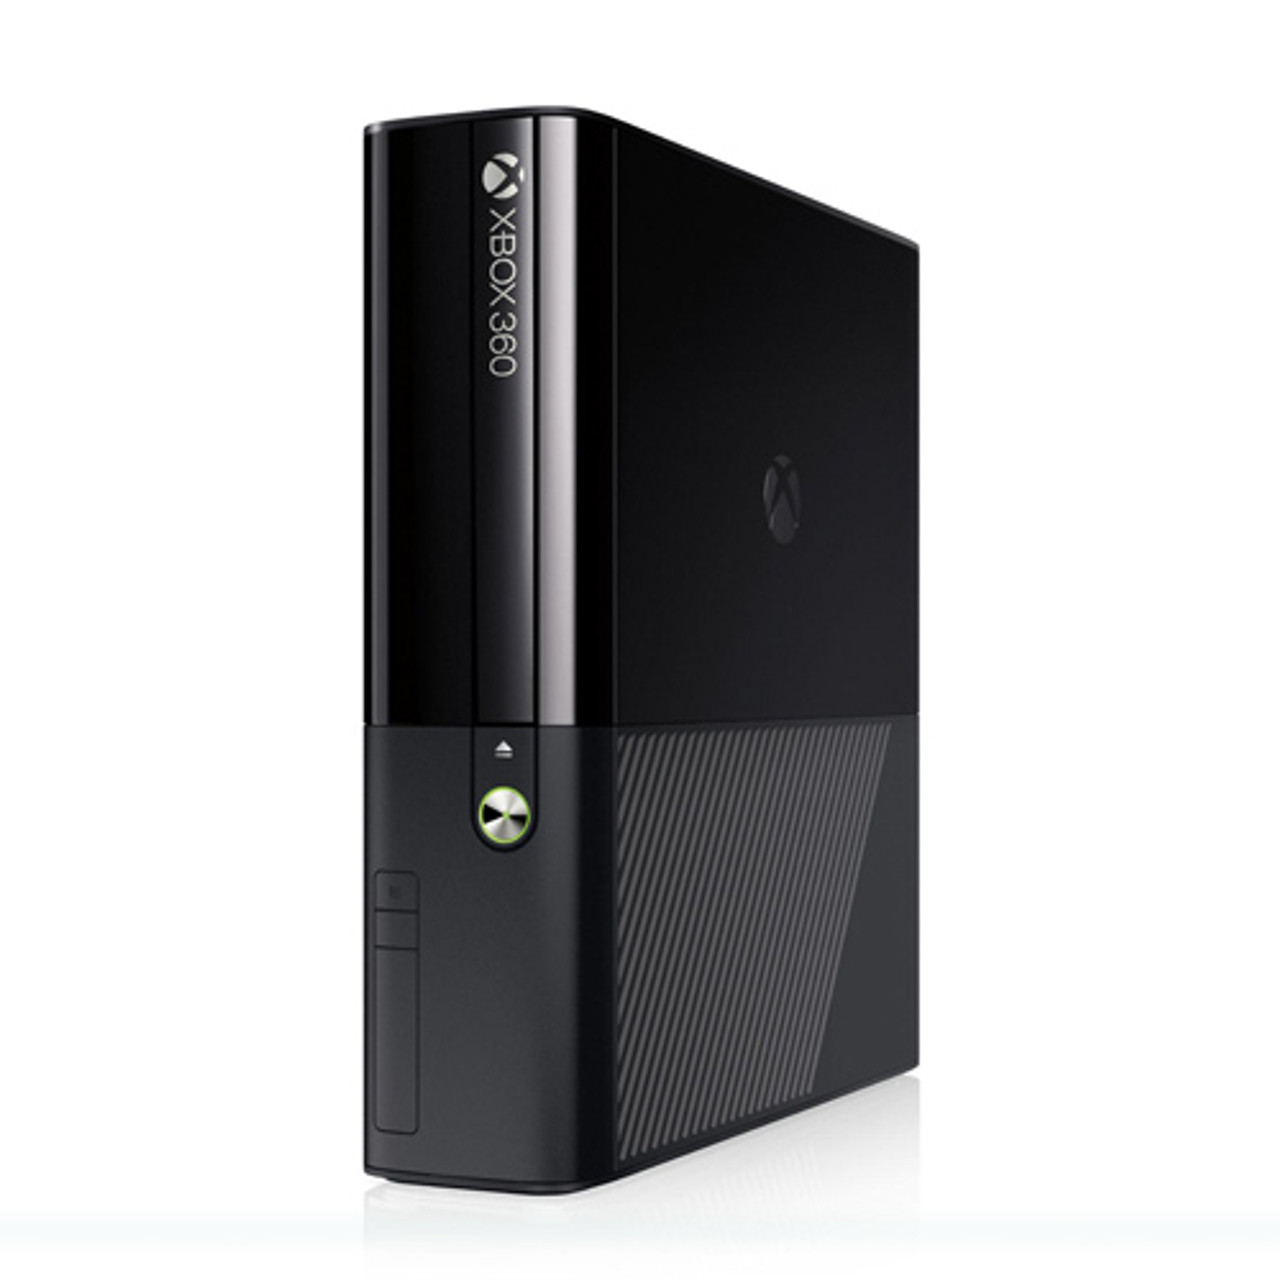 Xbox 360 500GB Console 